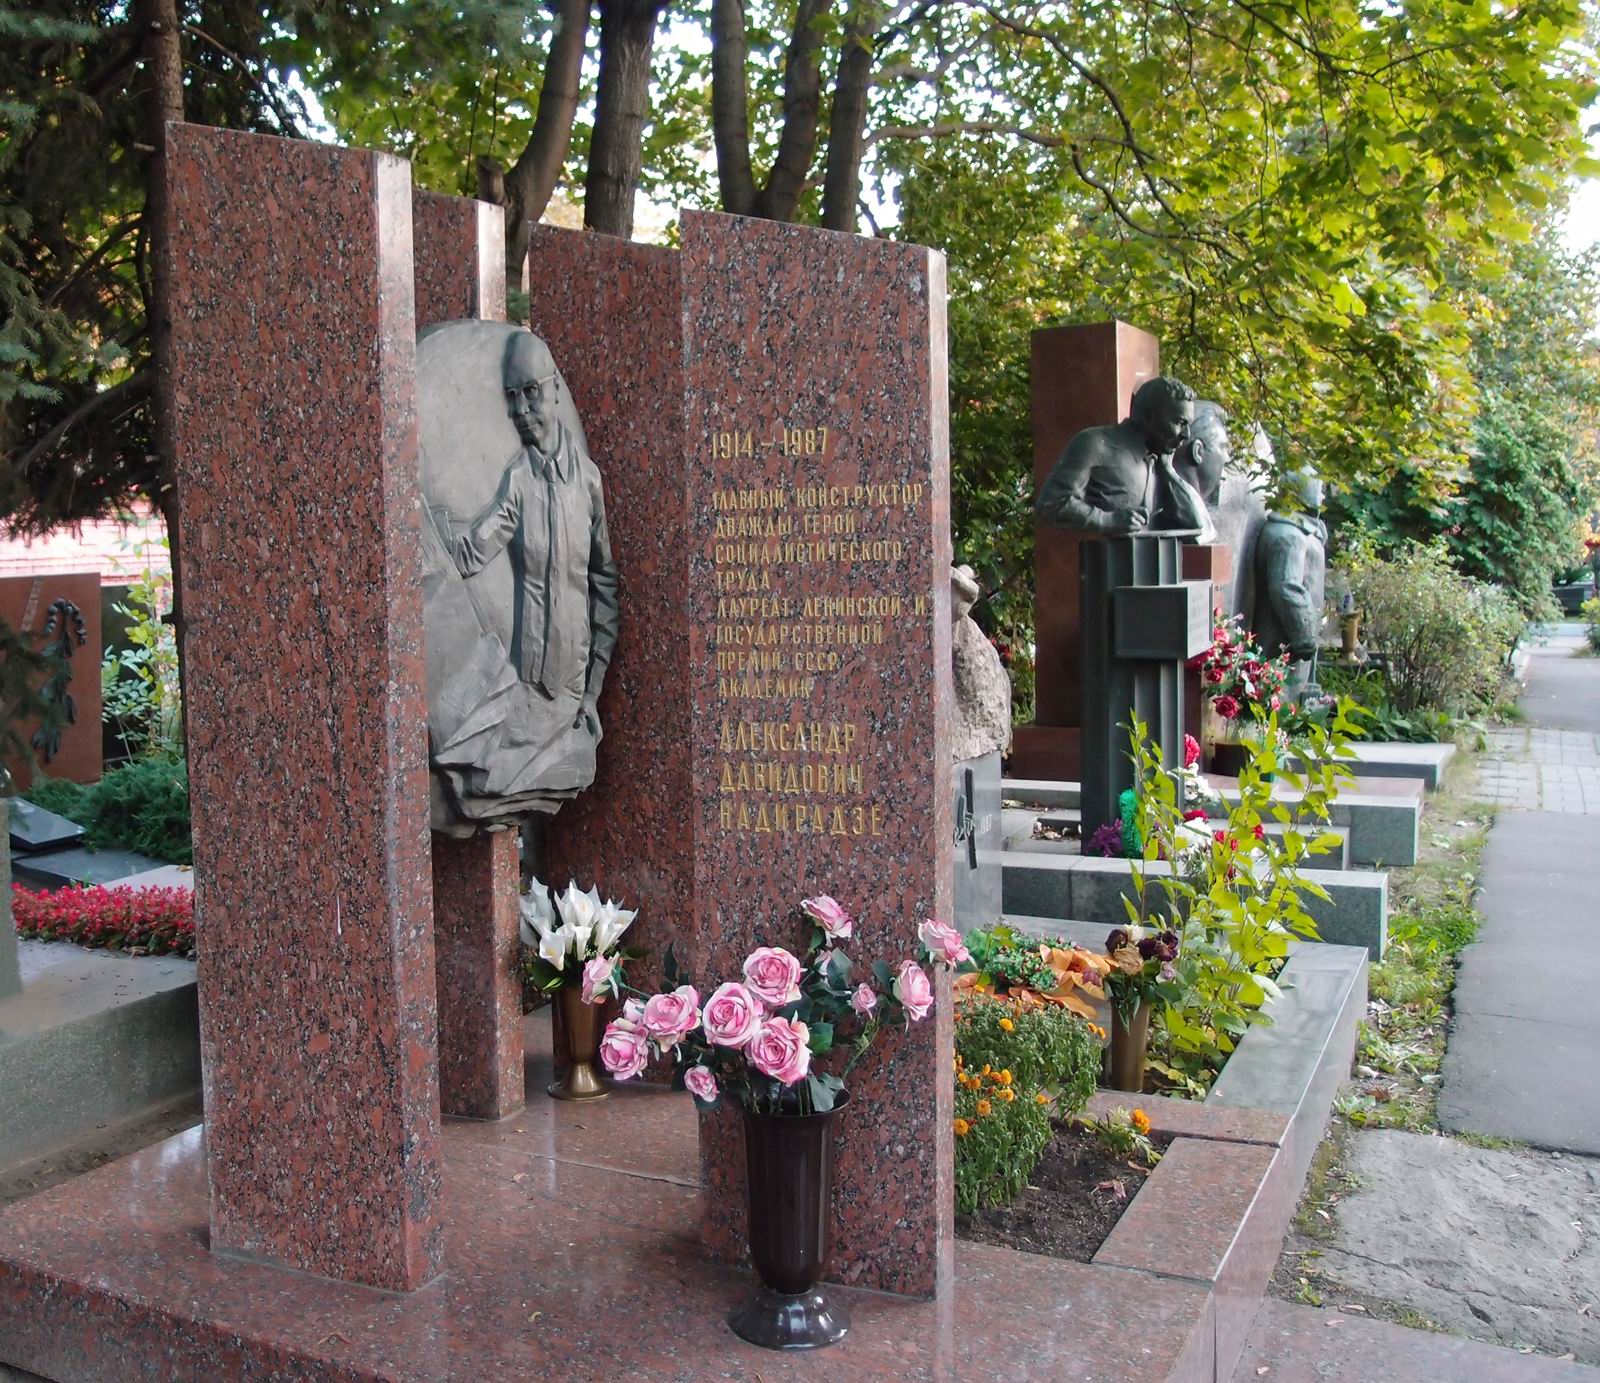 Памятник на могиле Надирадзе А.Д. (1914–1987), ск. М.Смирнов, арх. В.Гапеев, на Новодевичьем кладбище (10–4–13). Нажмите левую кнопку мыши чтобы увидеть фрагмент памятника.